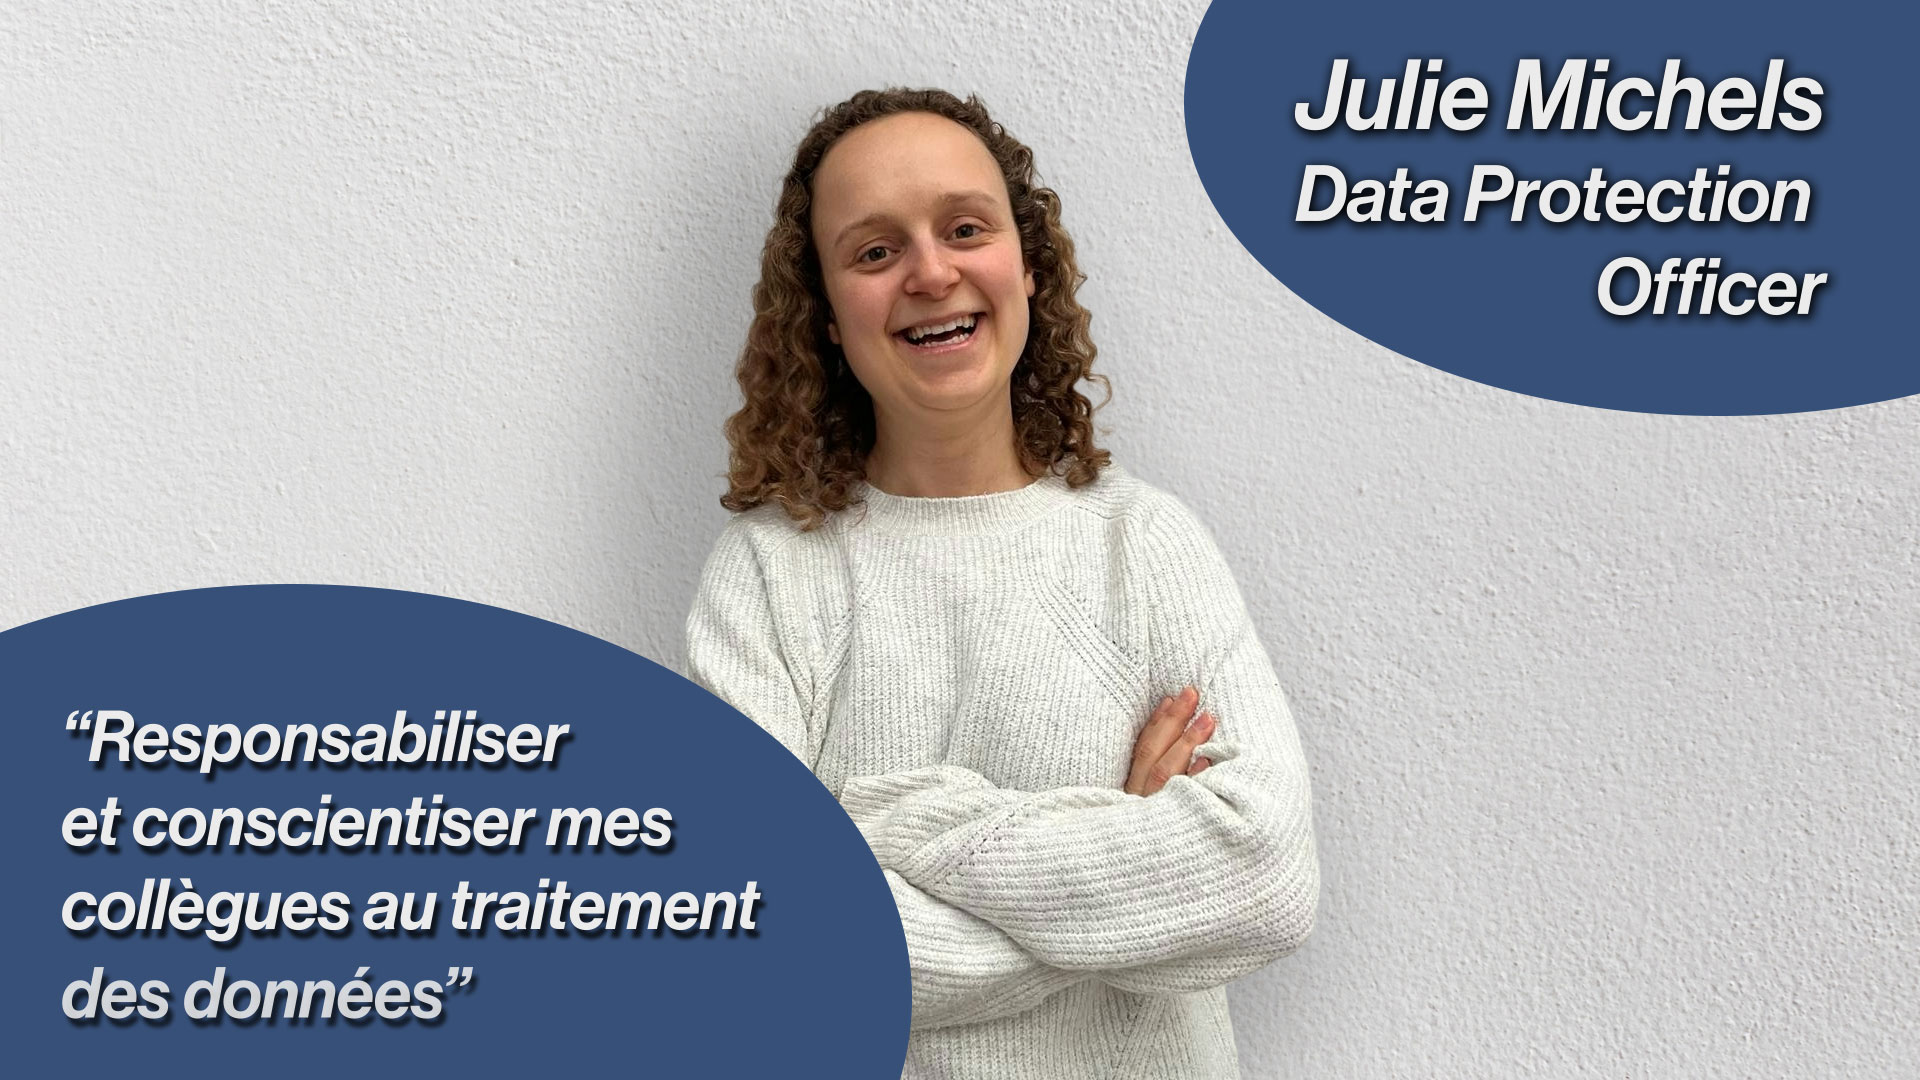 Julie Michels Data Protection Officer citation : Responsabiliser et conscientiser mes collègues au traitement des données